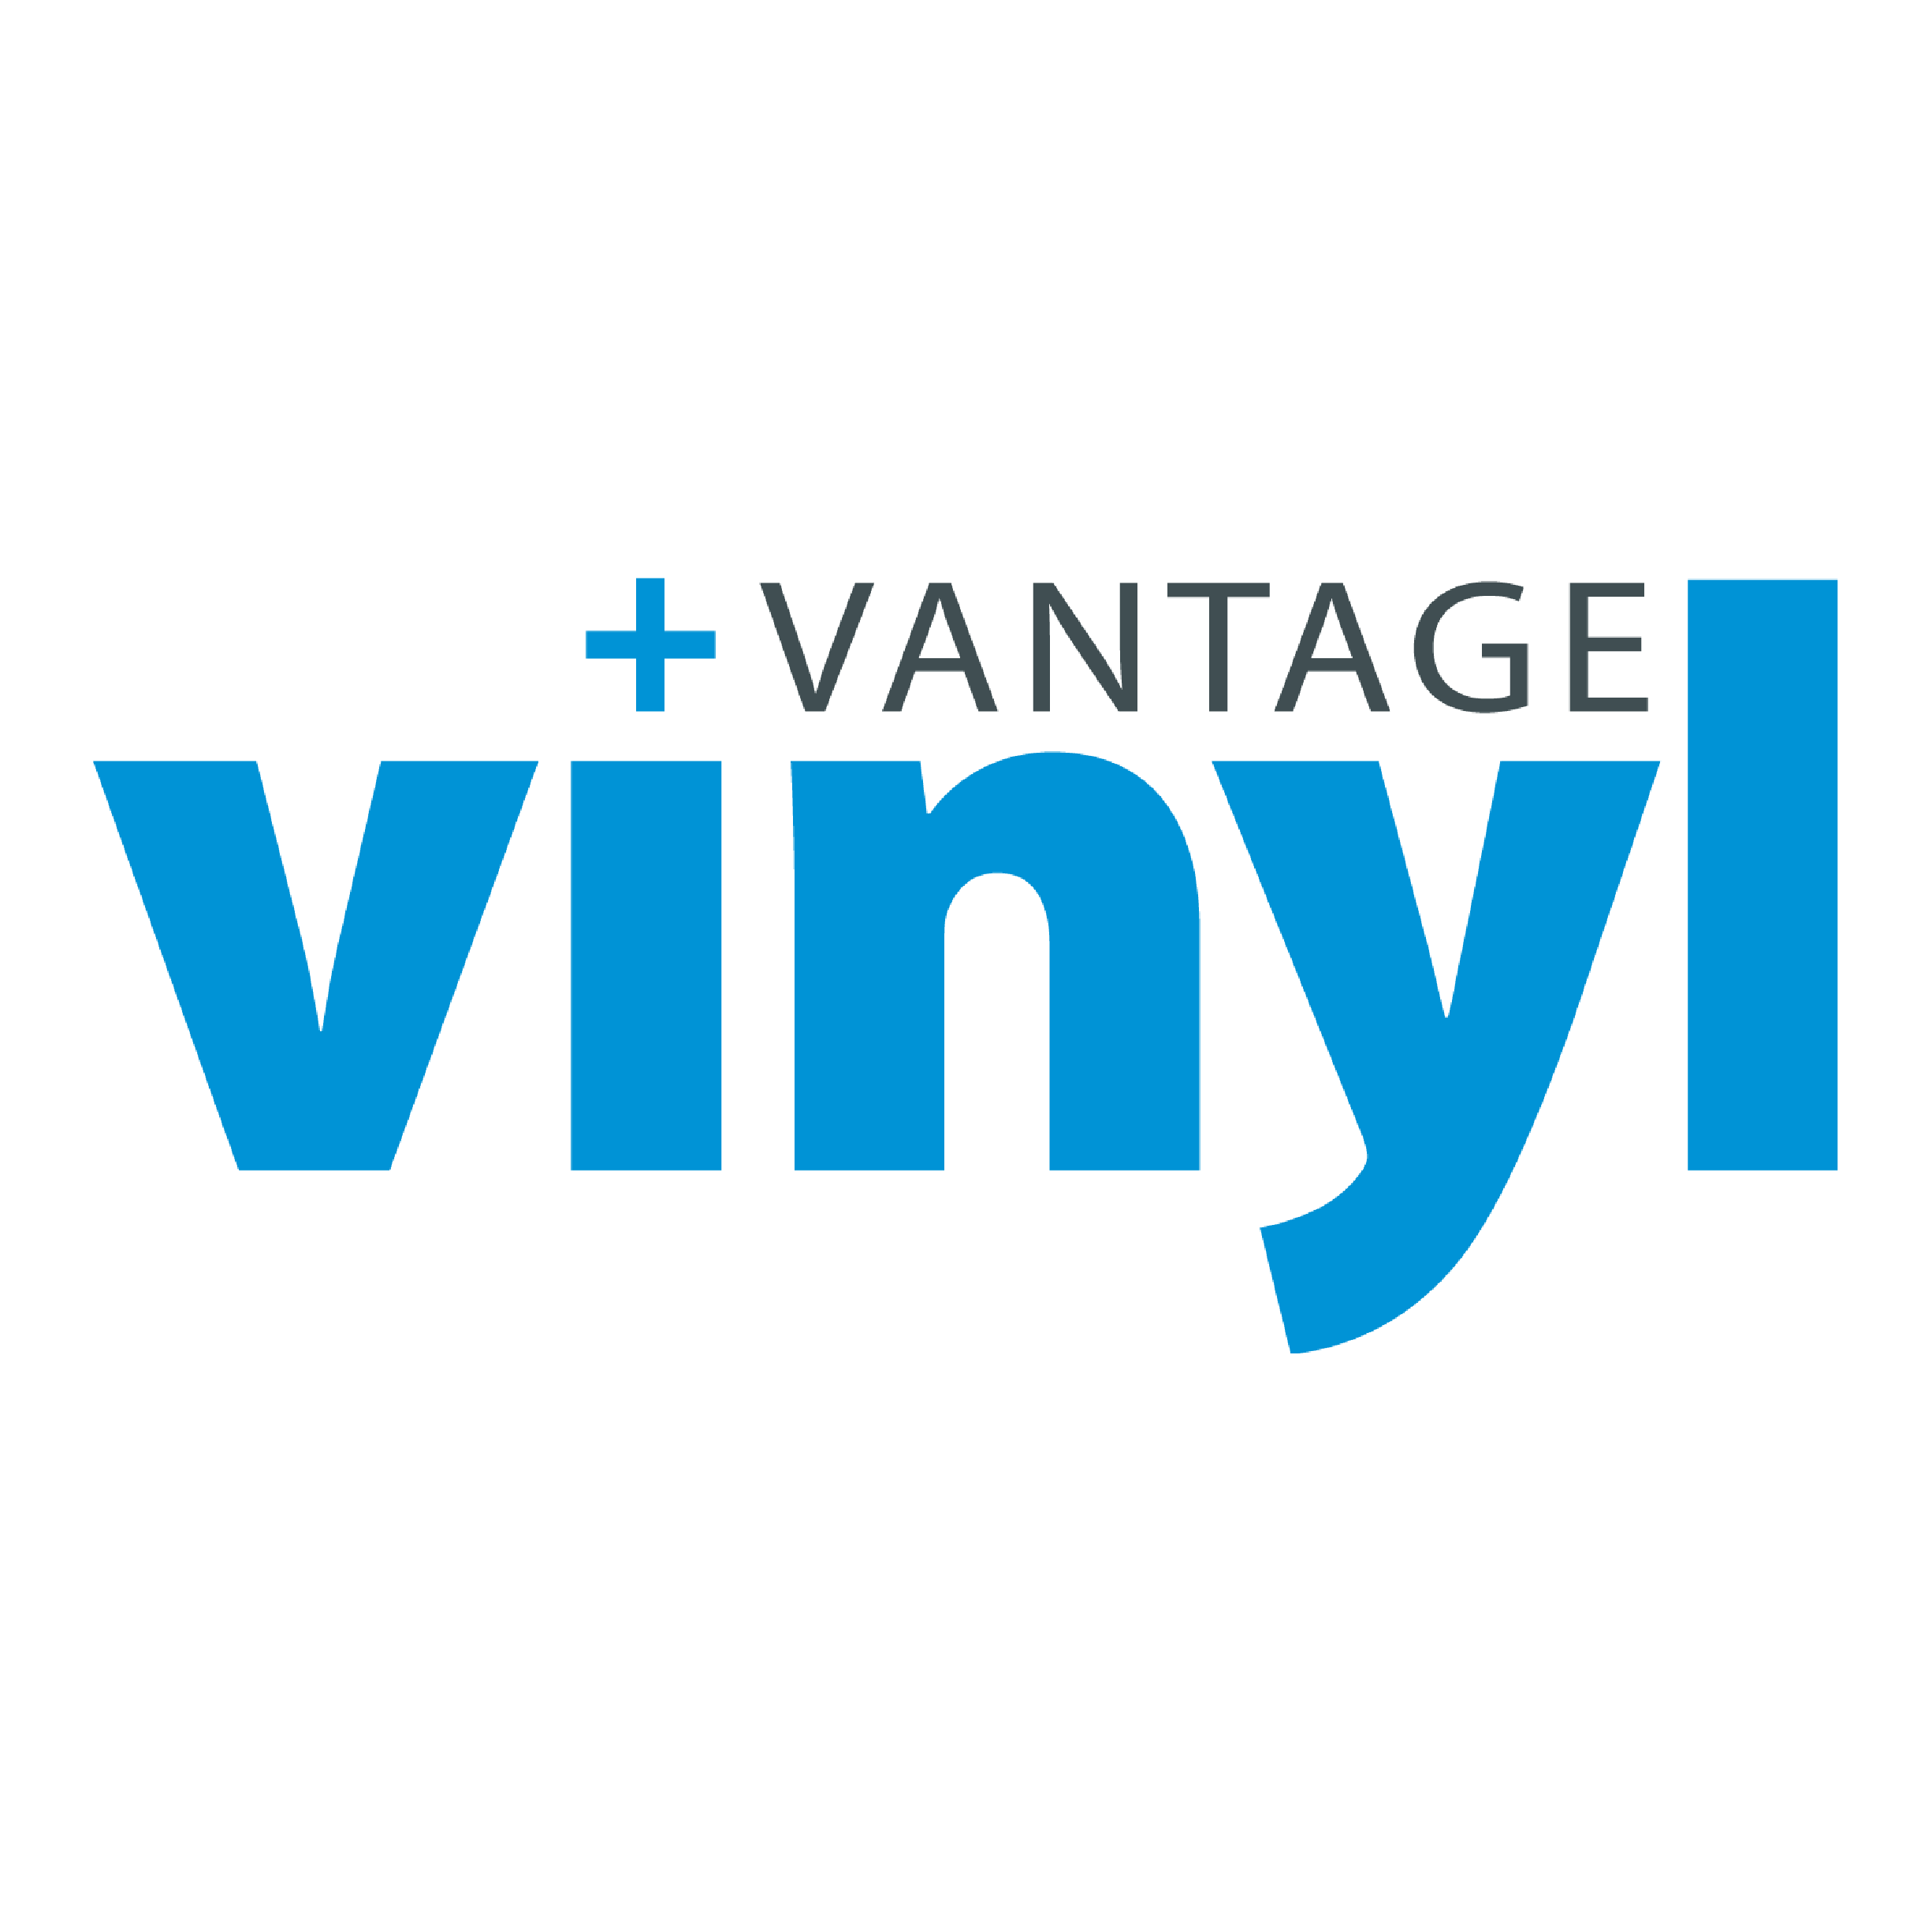 vantage vinyl logo